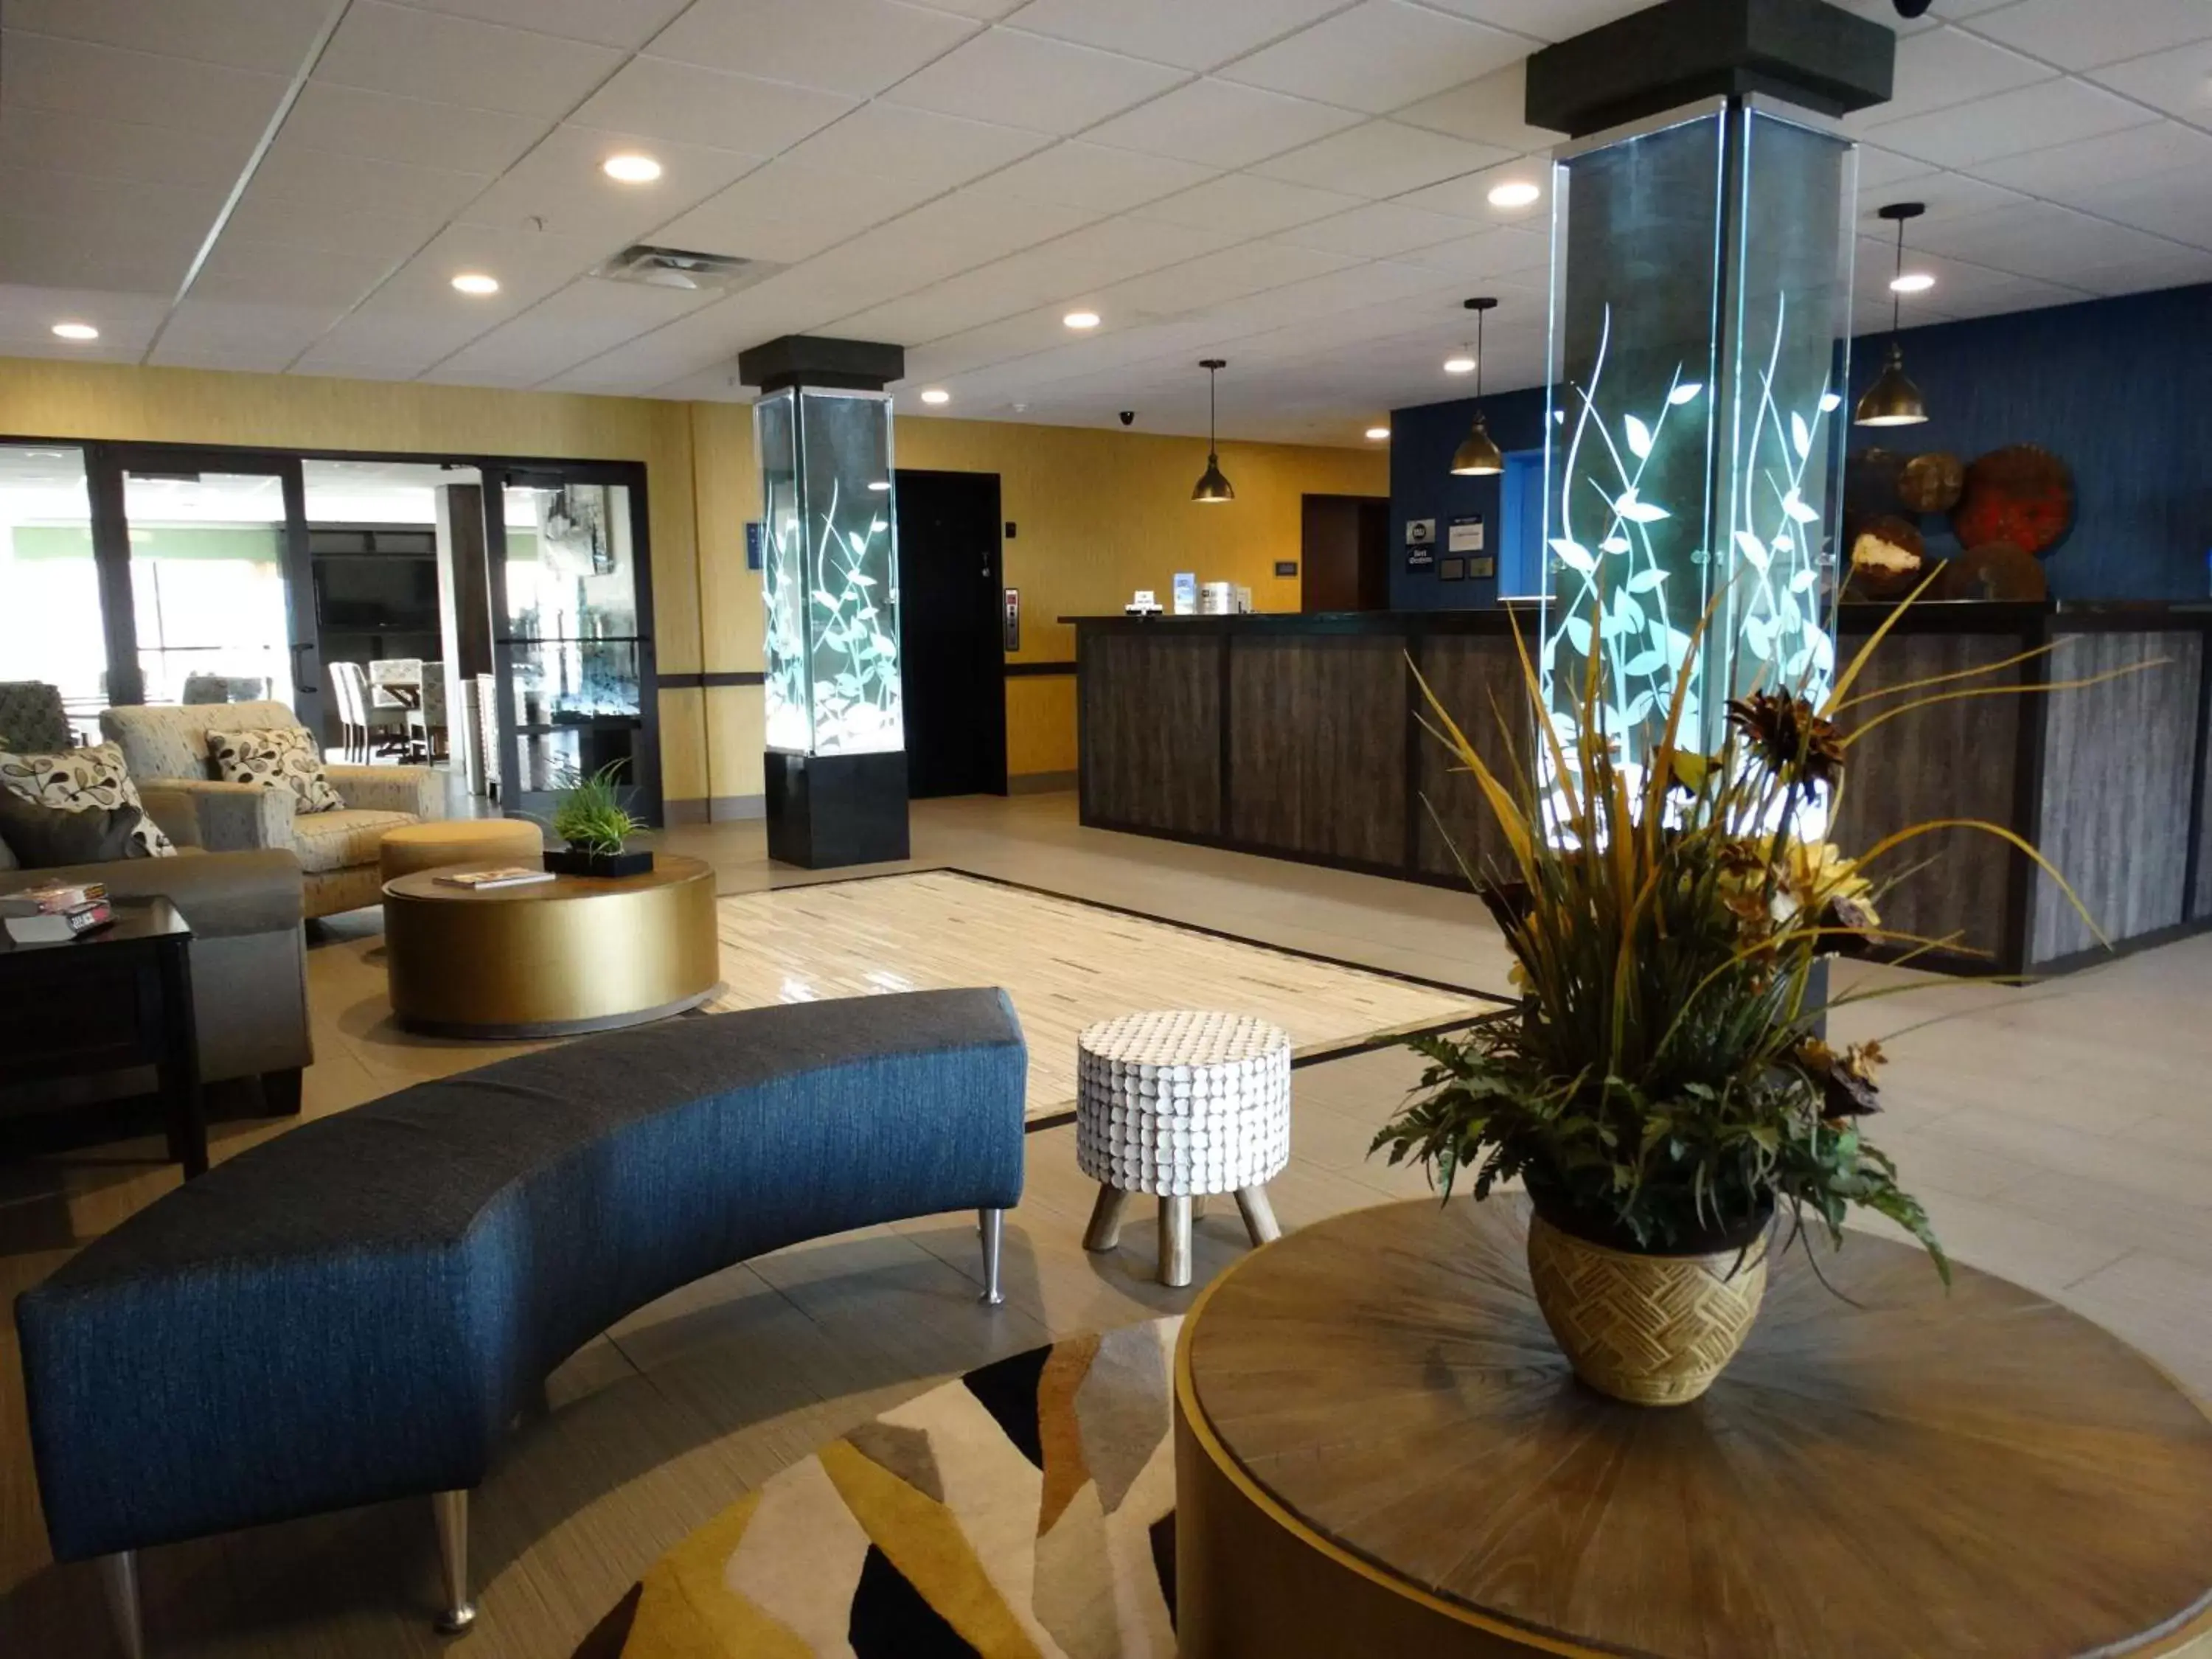 Lobby or reception, Lobby/Reception in Best Western Duchesne Inn